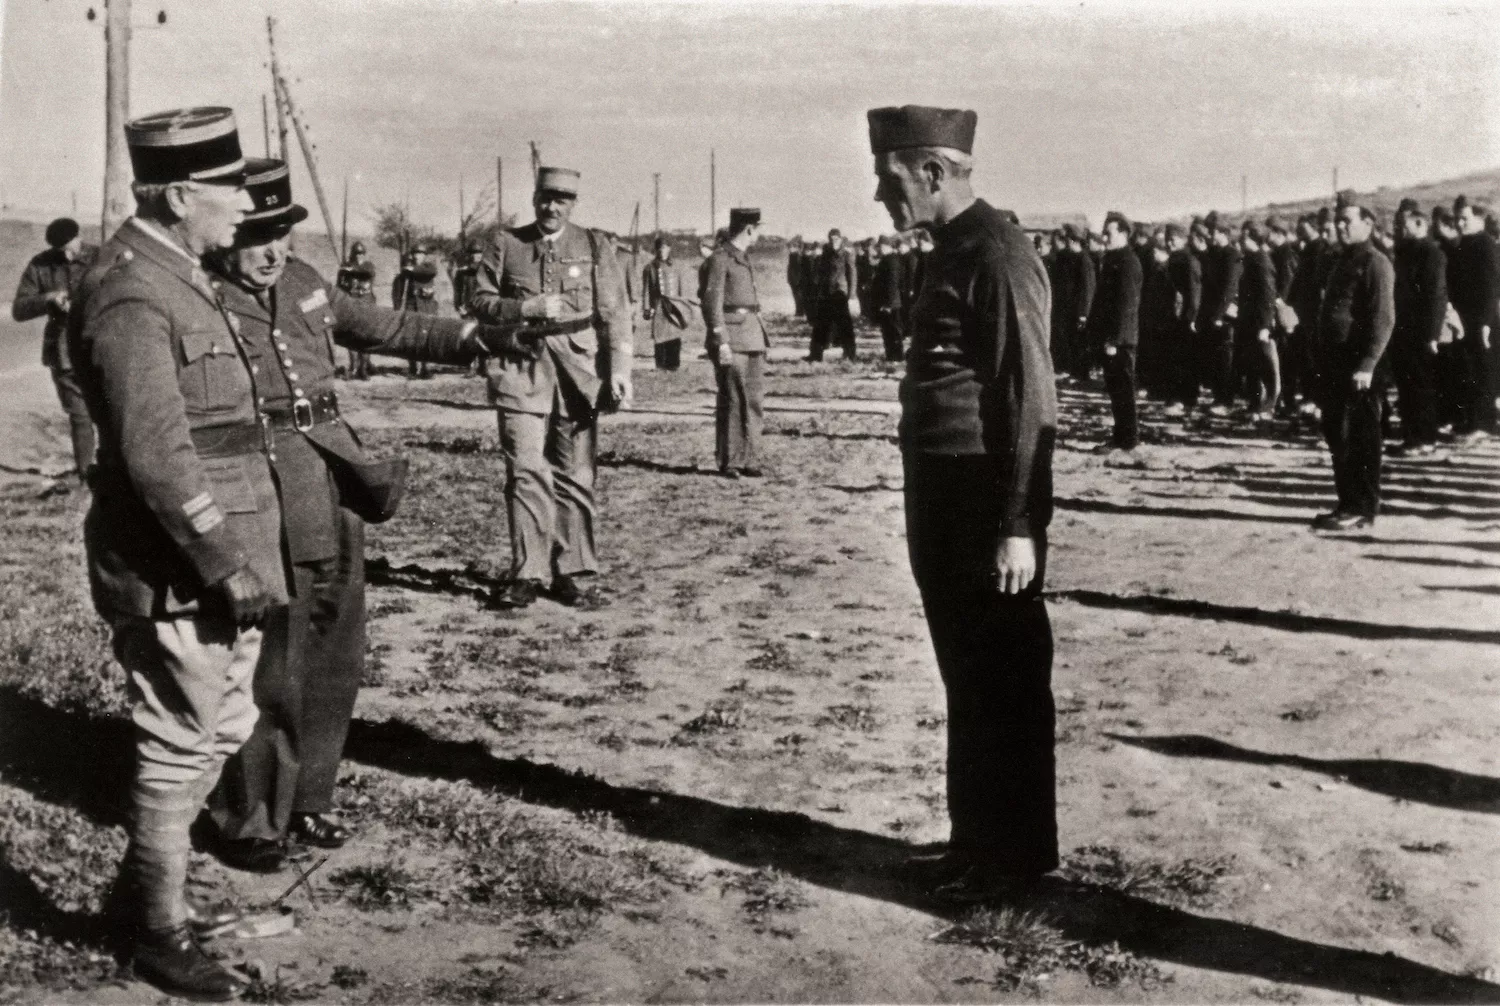 Els exiliats catalans van servir a la resistència francesa. A la dreta, el capità Carles Ordeig, que va servir a la Resistència francesa